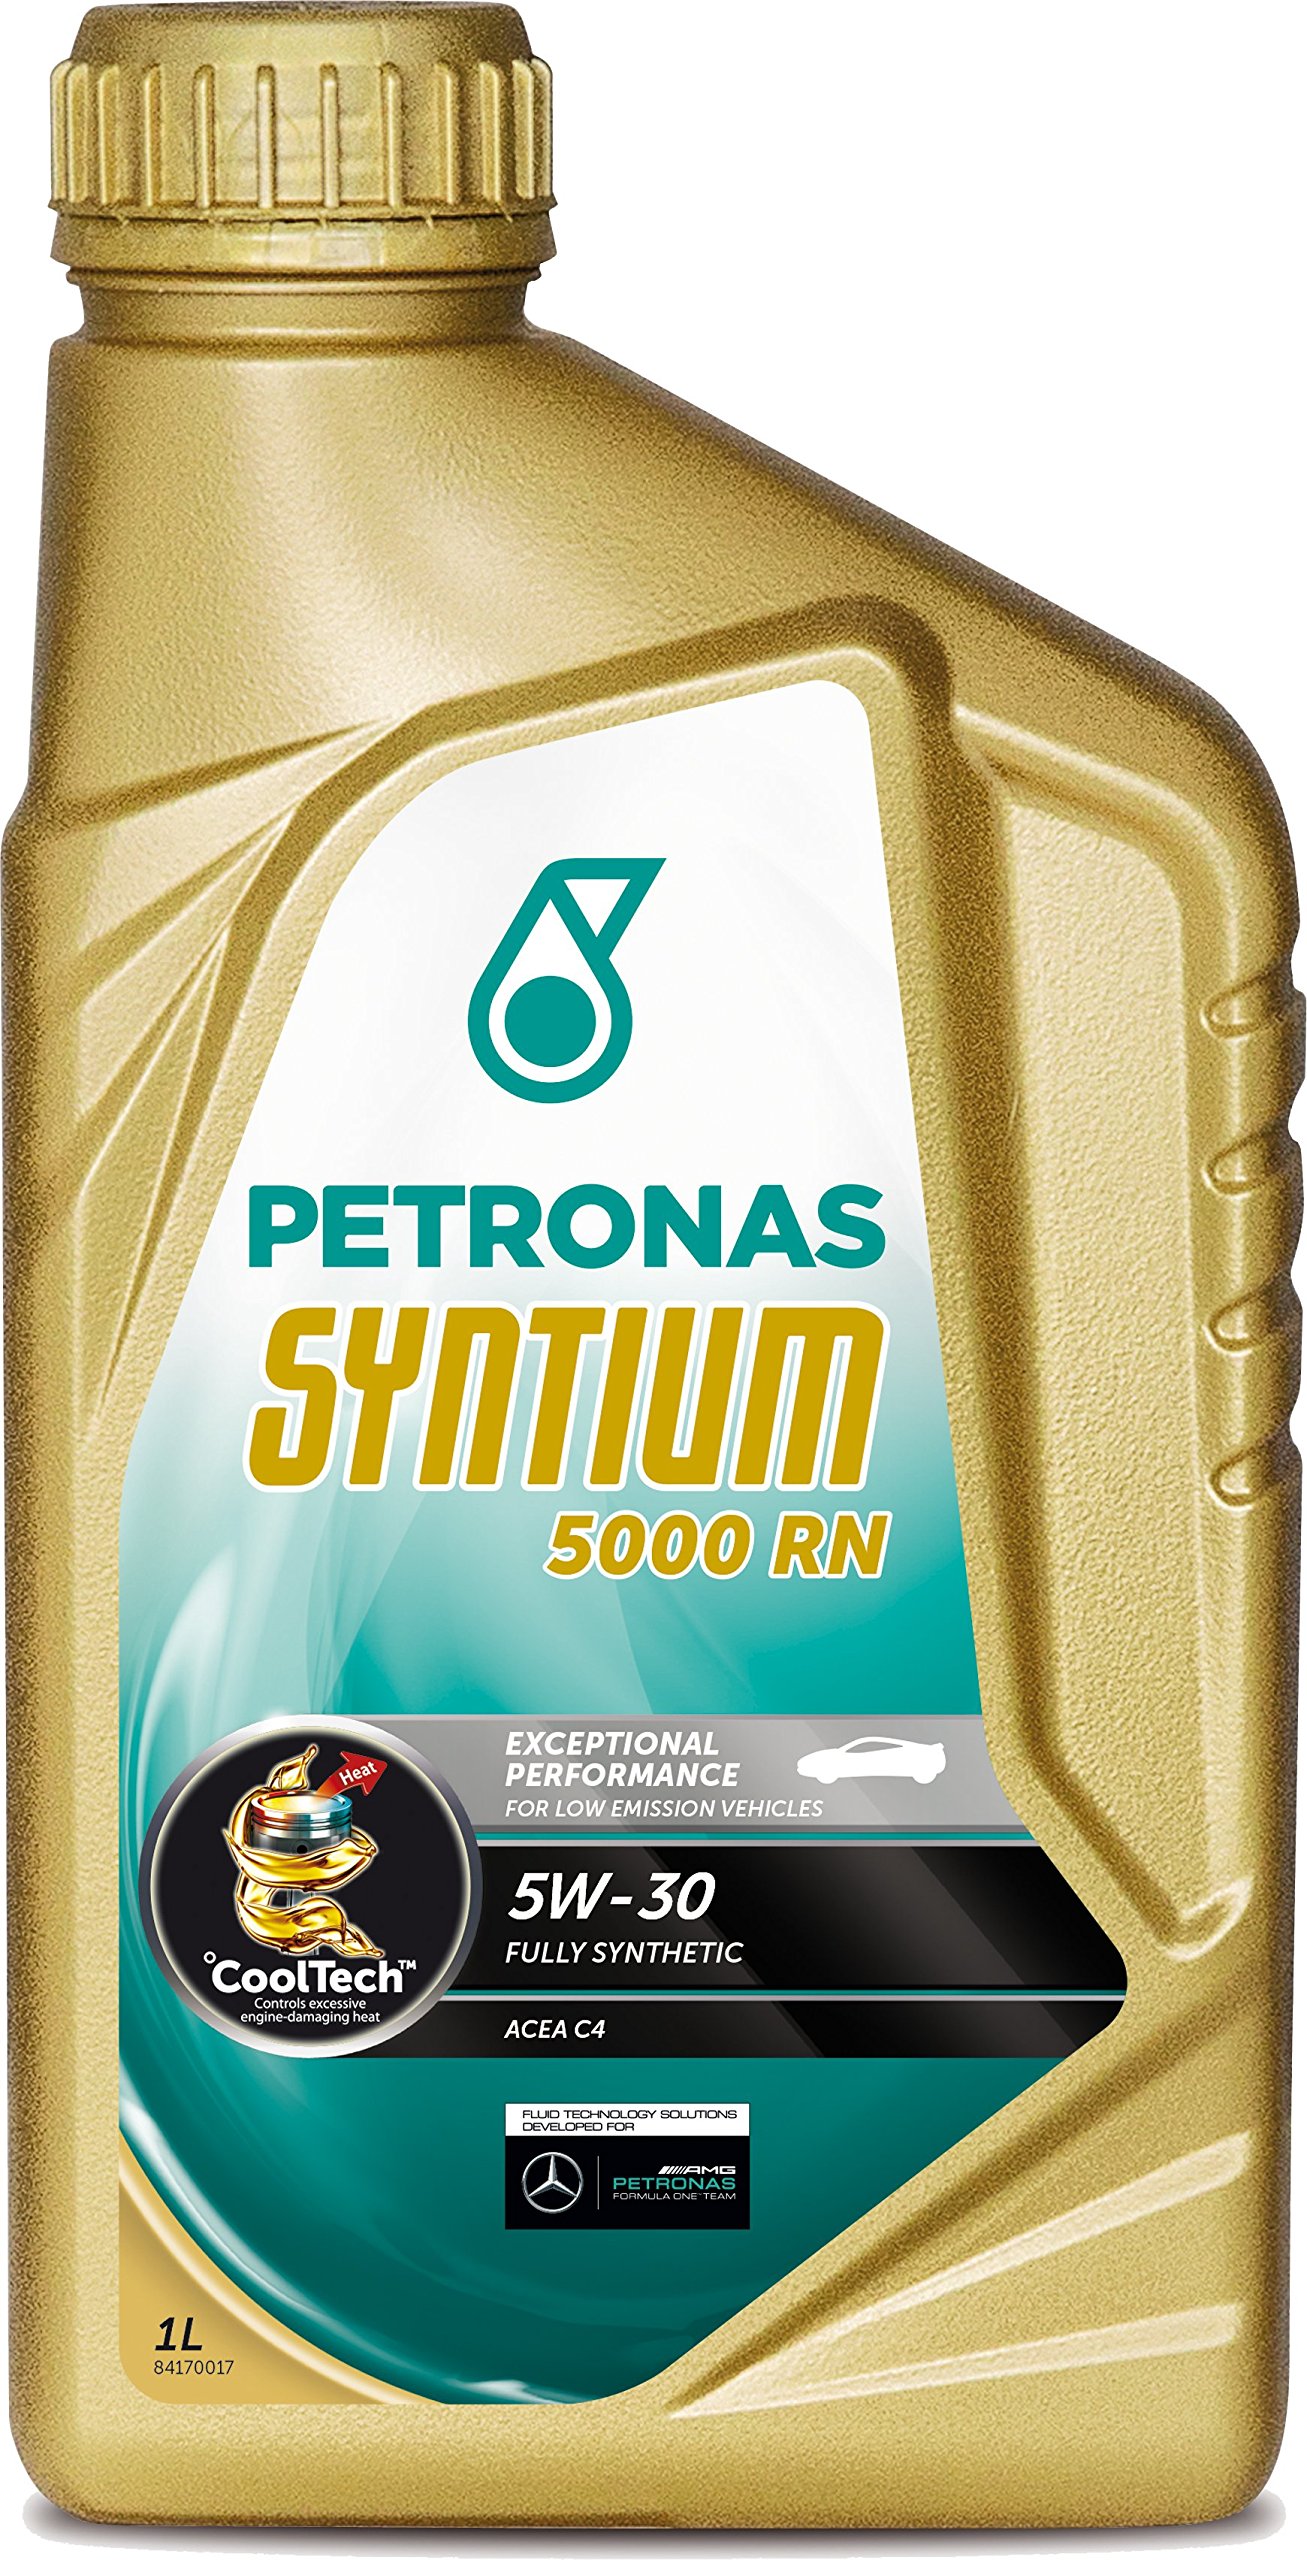 Petronas SYNTIUM 5000 RN 5W-30 Synthetisches Motorenöl, 1 Liter von Syntium